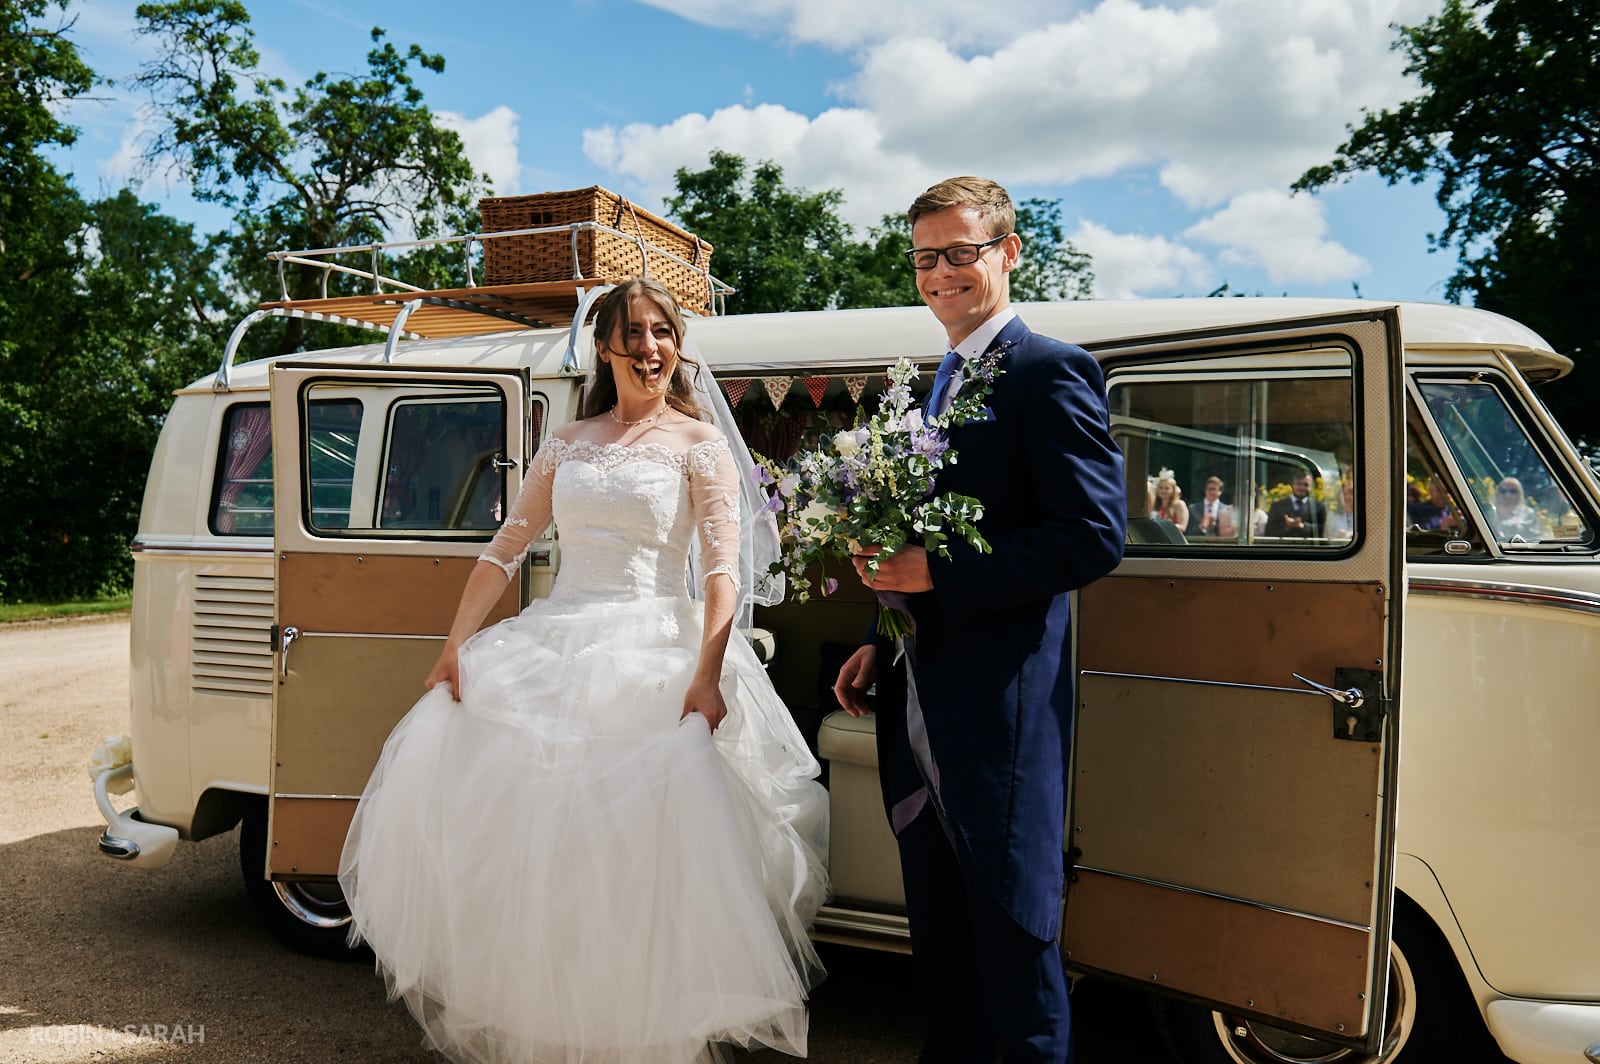 Bride and groom arrive at Wethele Manor in old camper van